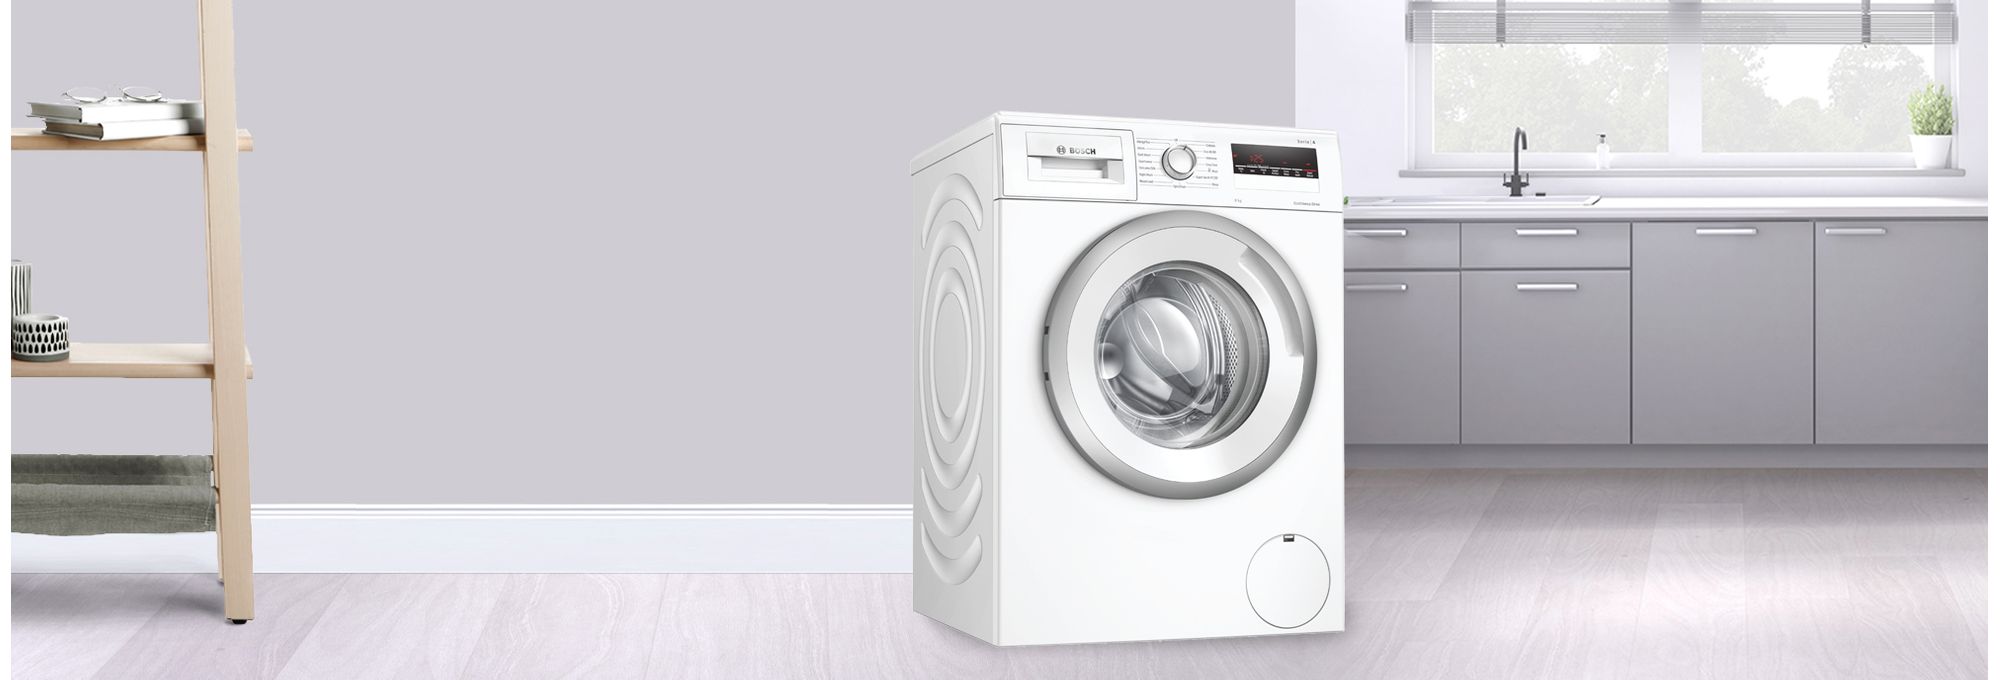 Bosch 8kg Series 4 Washing Machine | WAN28281GB_WH | ao.com